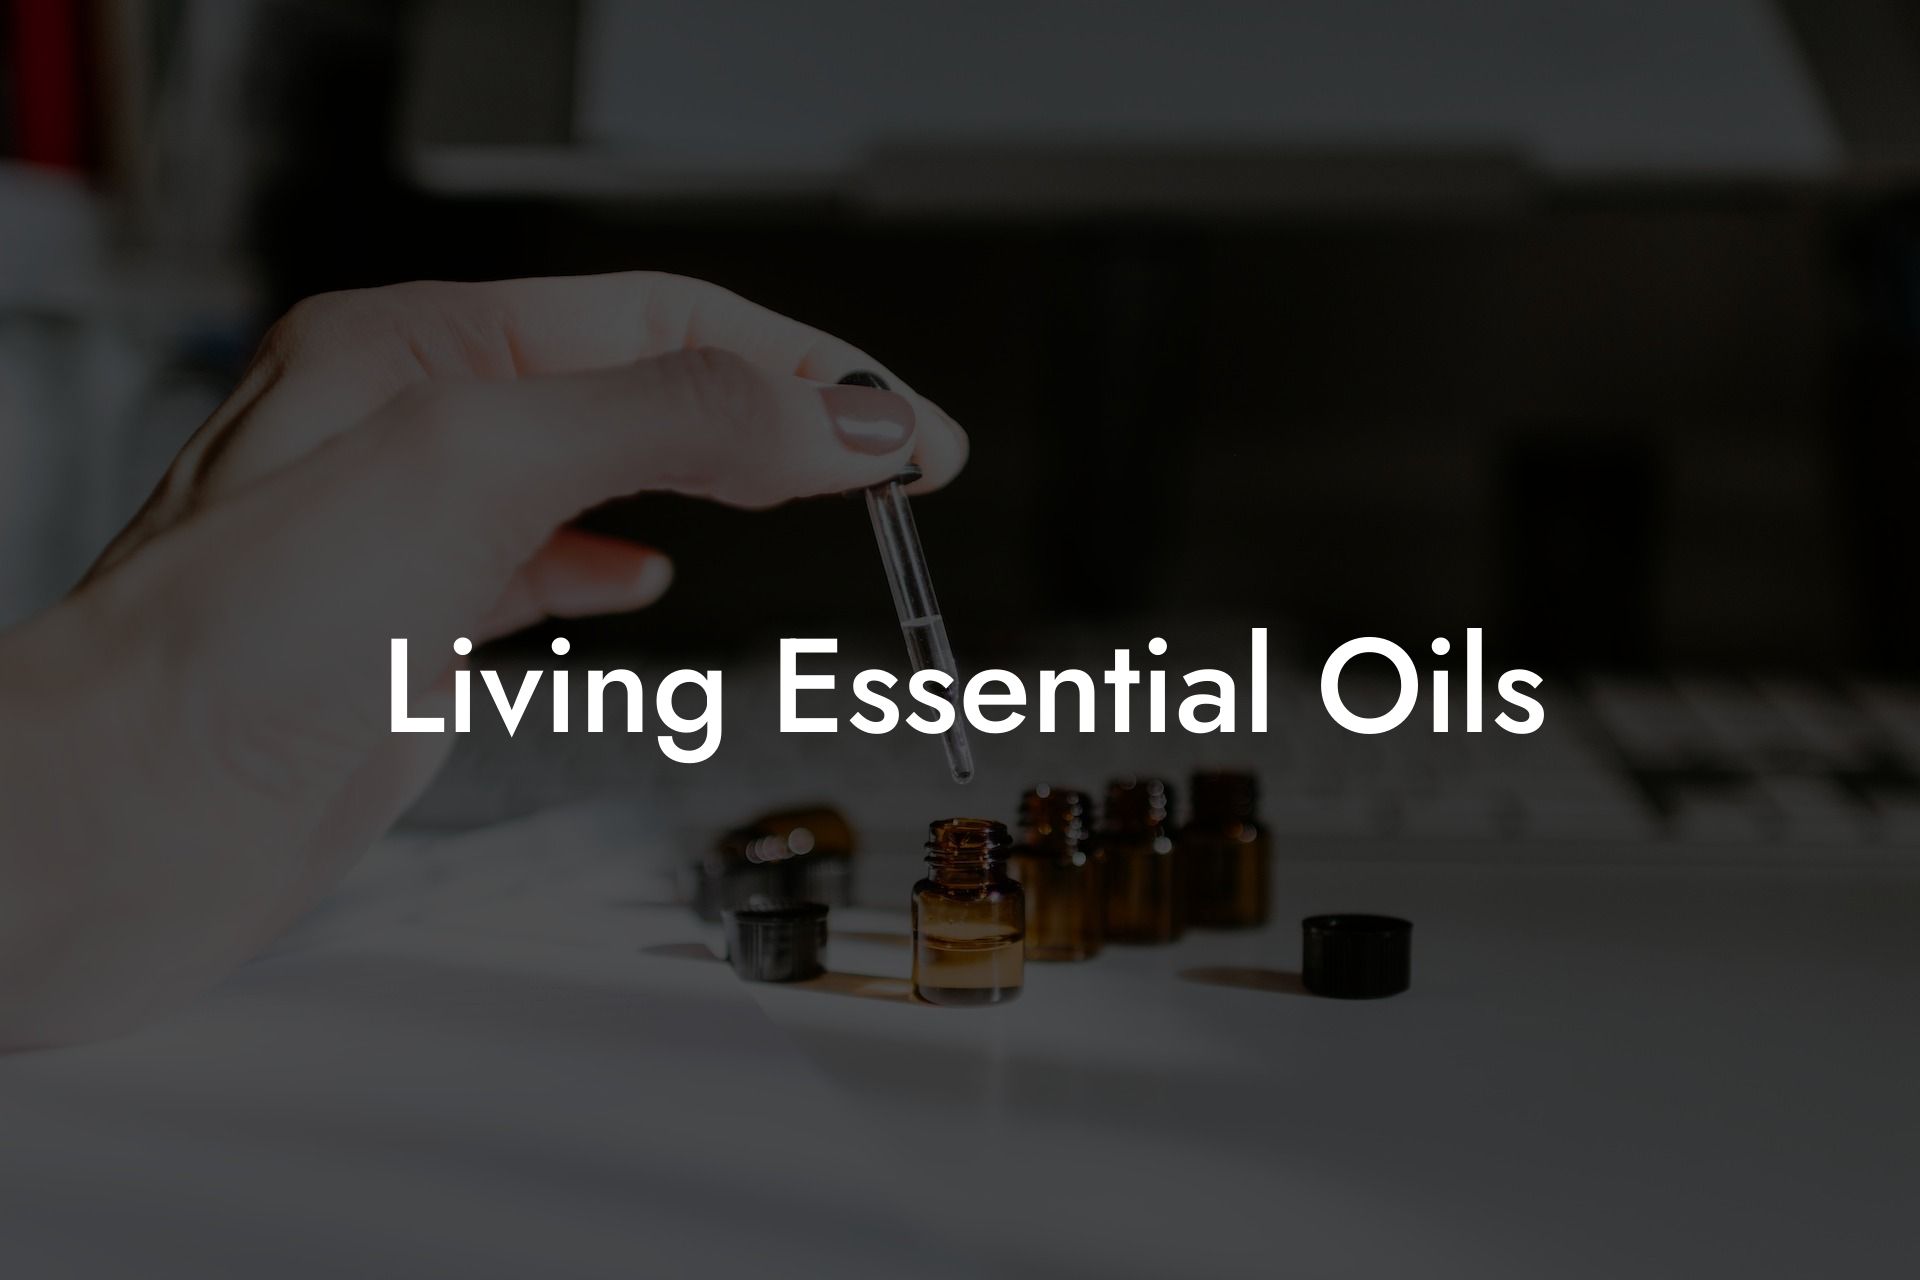 Living Essential Oils